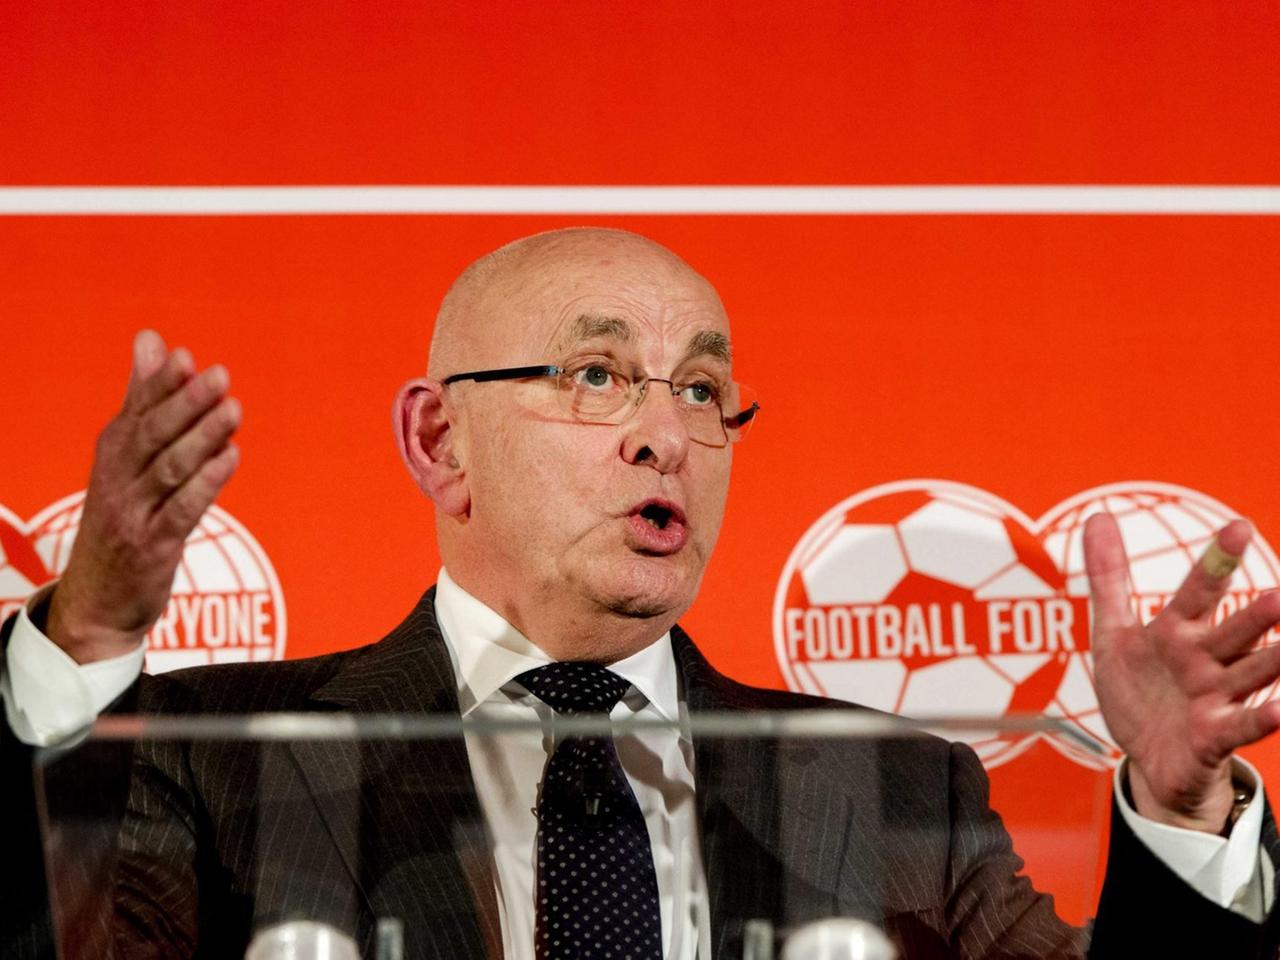 Der Chef des niederländischen Fußballverbandes, Michael van Praag